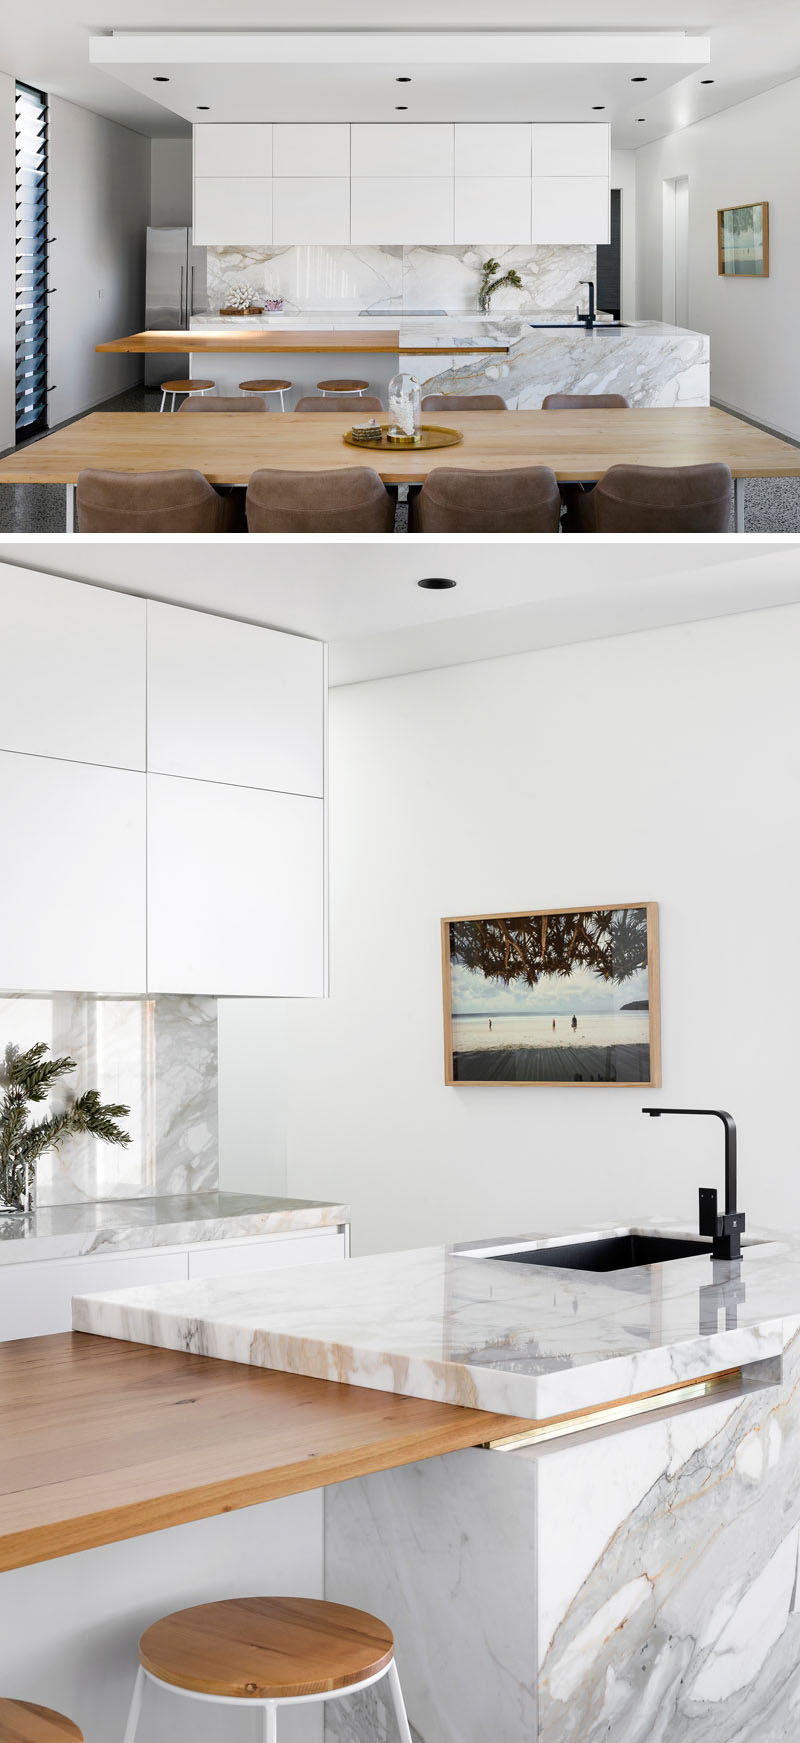 В этой кухне белая мебель сочетается с камнем и деревянной столешницей, что придает современный вид. #ModernKitchen #KitchenDesign